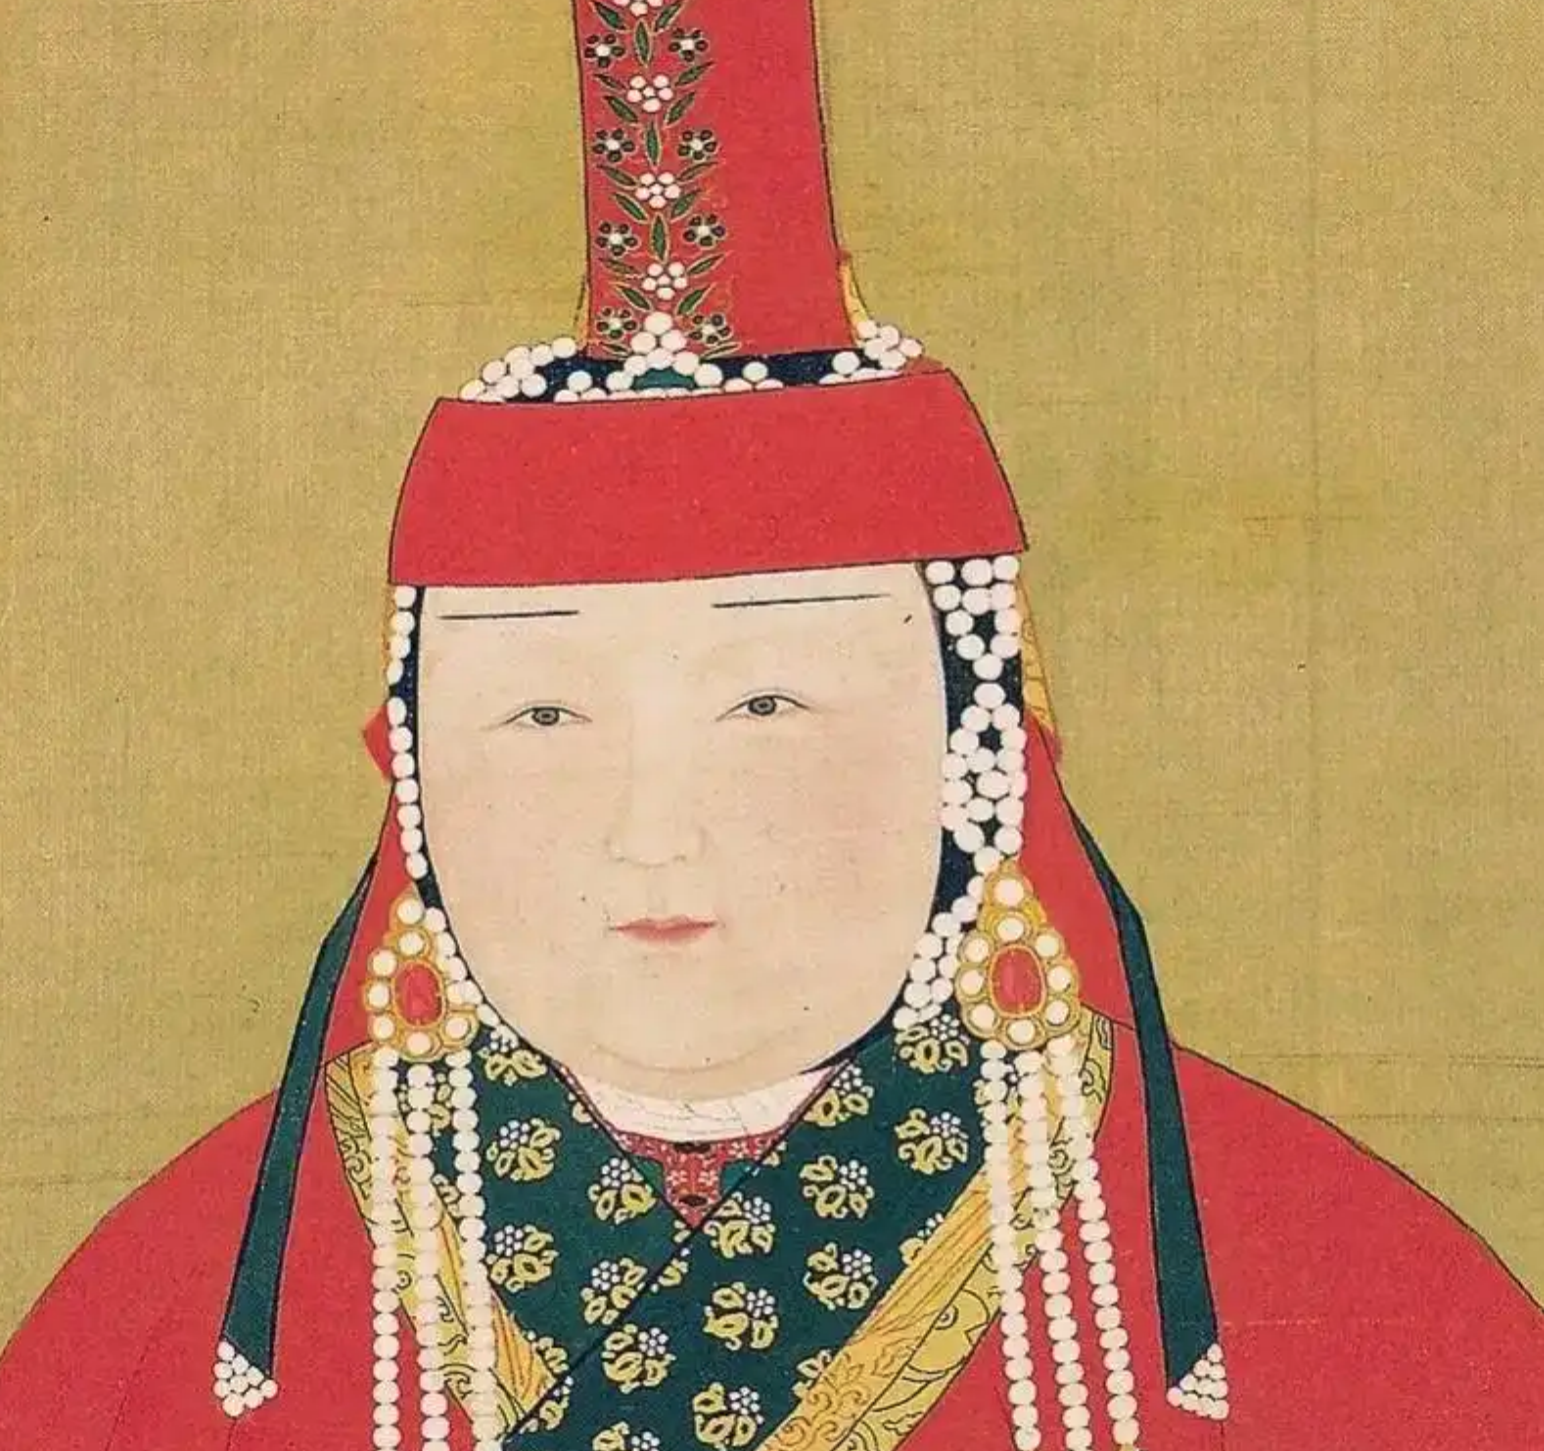 察必皇后像,皇后头戴的风格大胆红色高帽是元朝皇族或贵妇服饰中最具